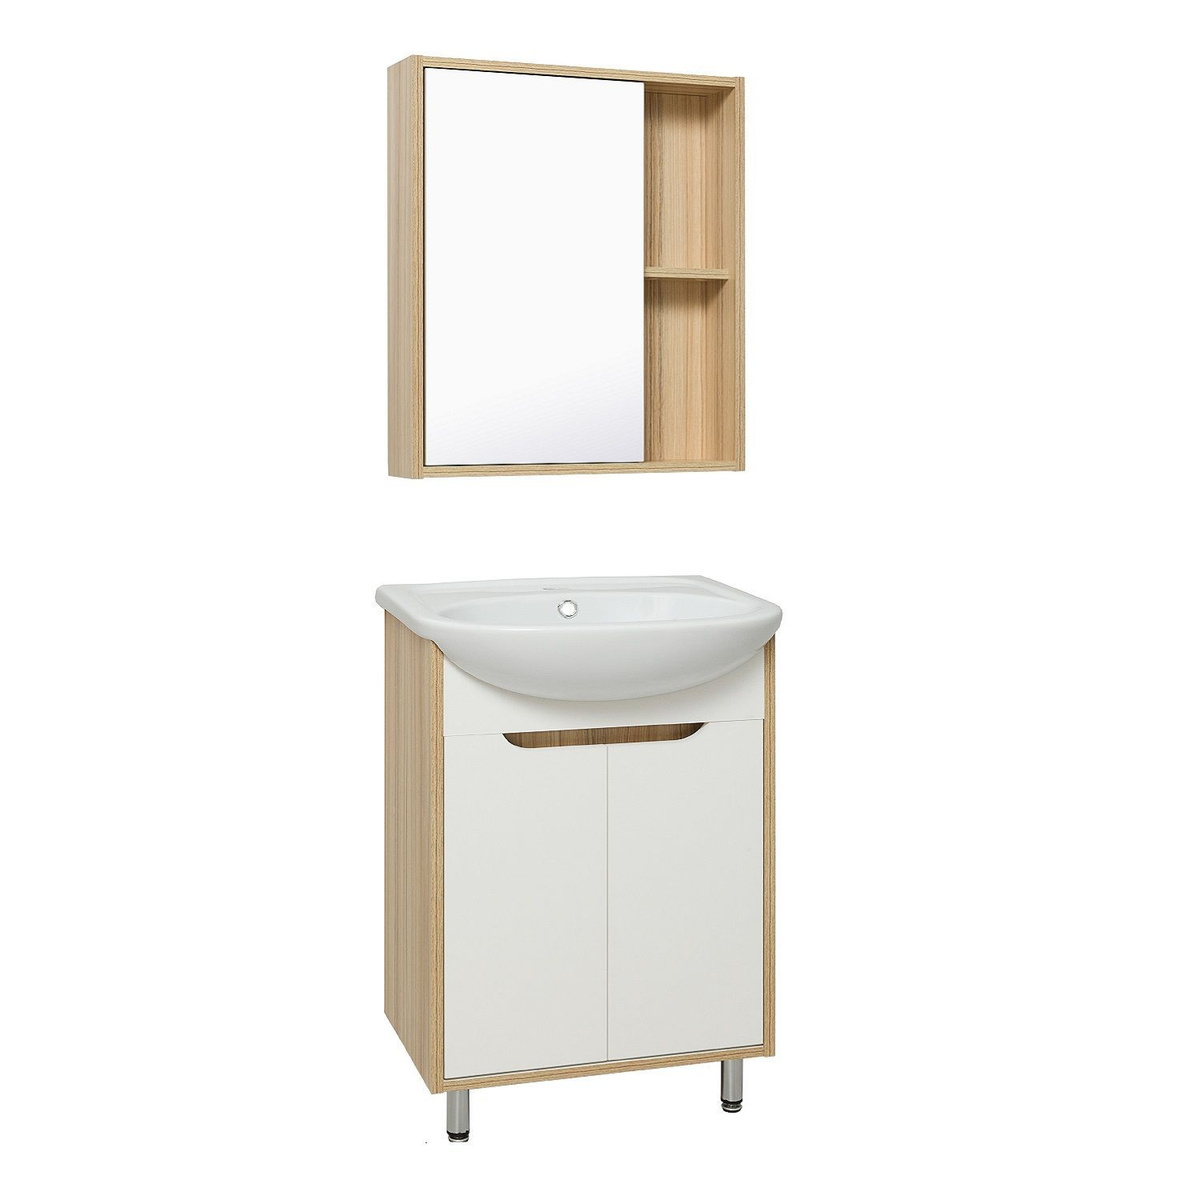 Мебель для ванной, Runo, Эко 60, тумба с раковиной Уют 60, шкаф для ванной, зеркало для ванной